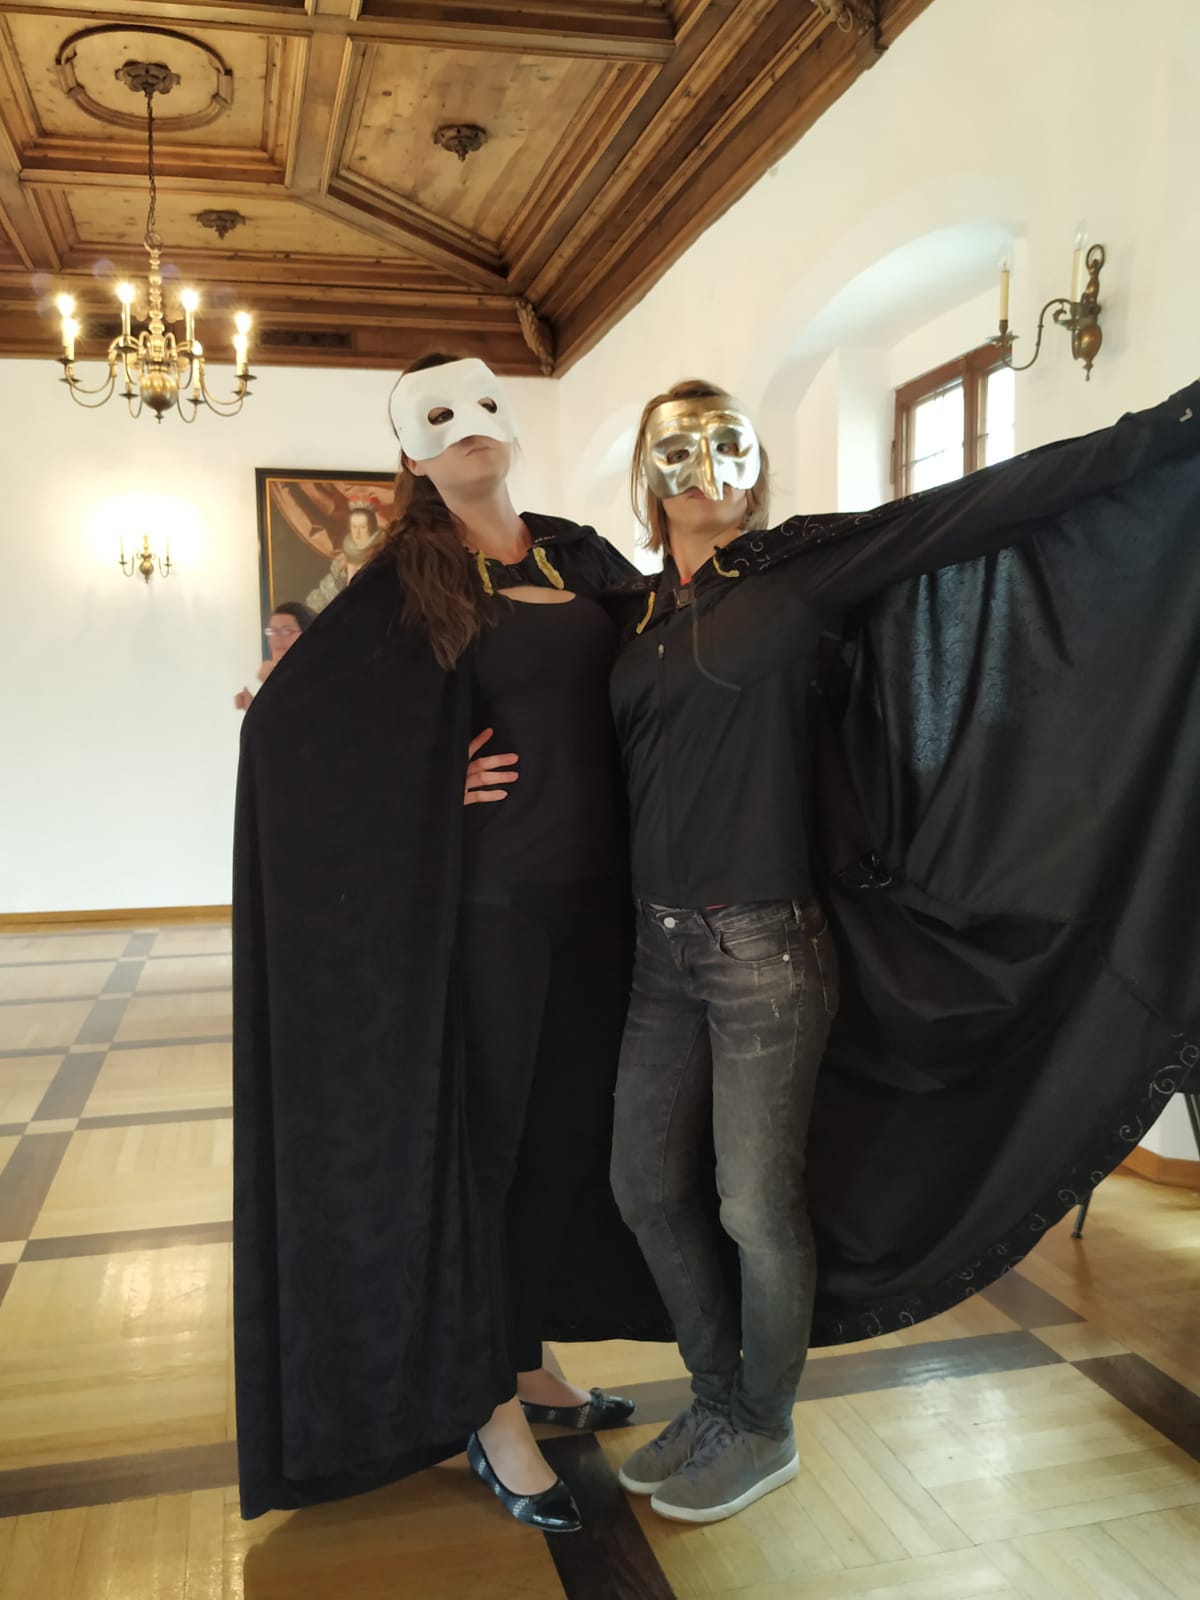 Workshop teatrale: "Le maschere della Commedia dell’arte"